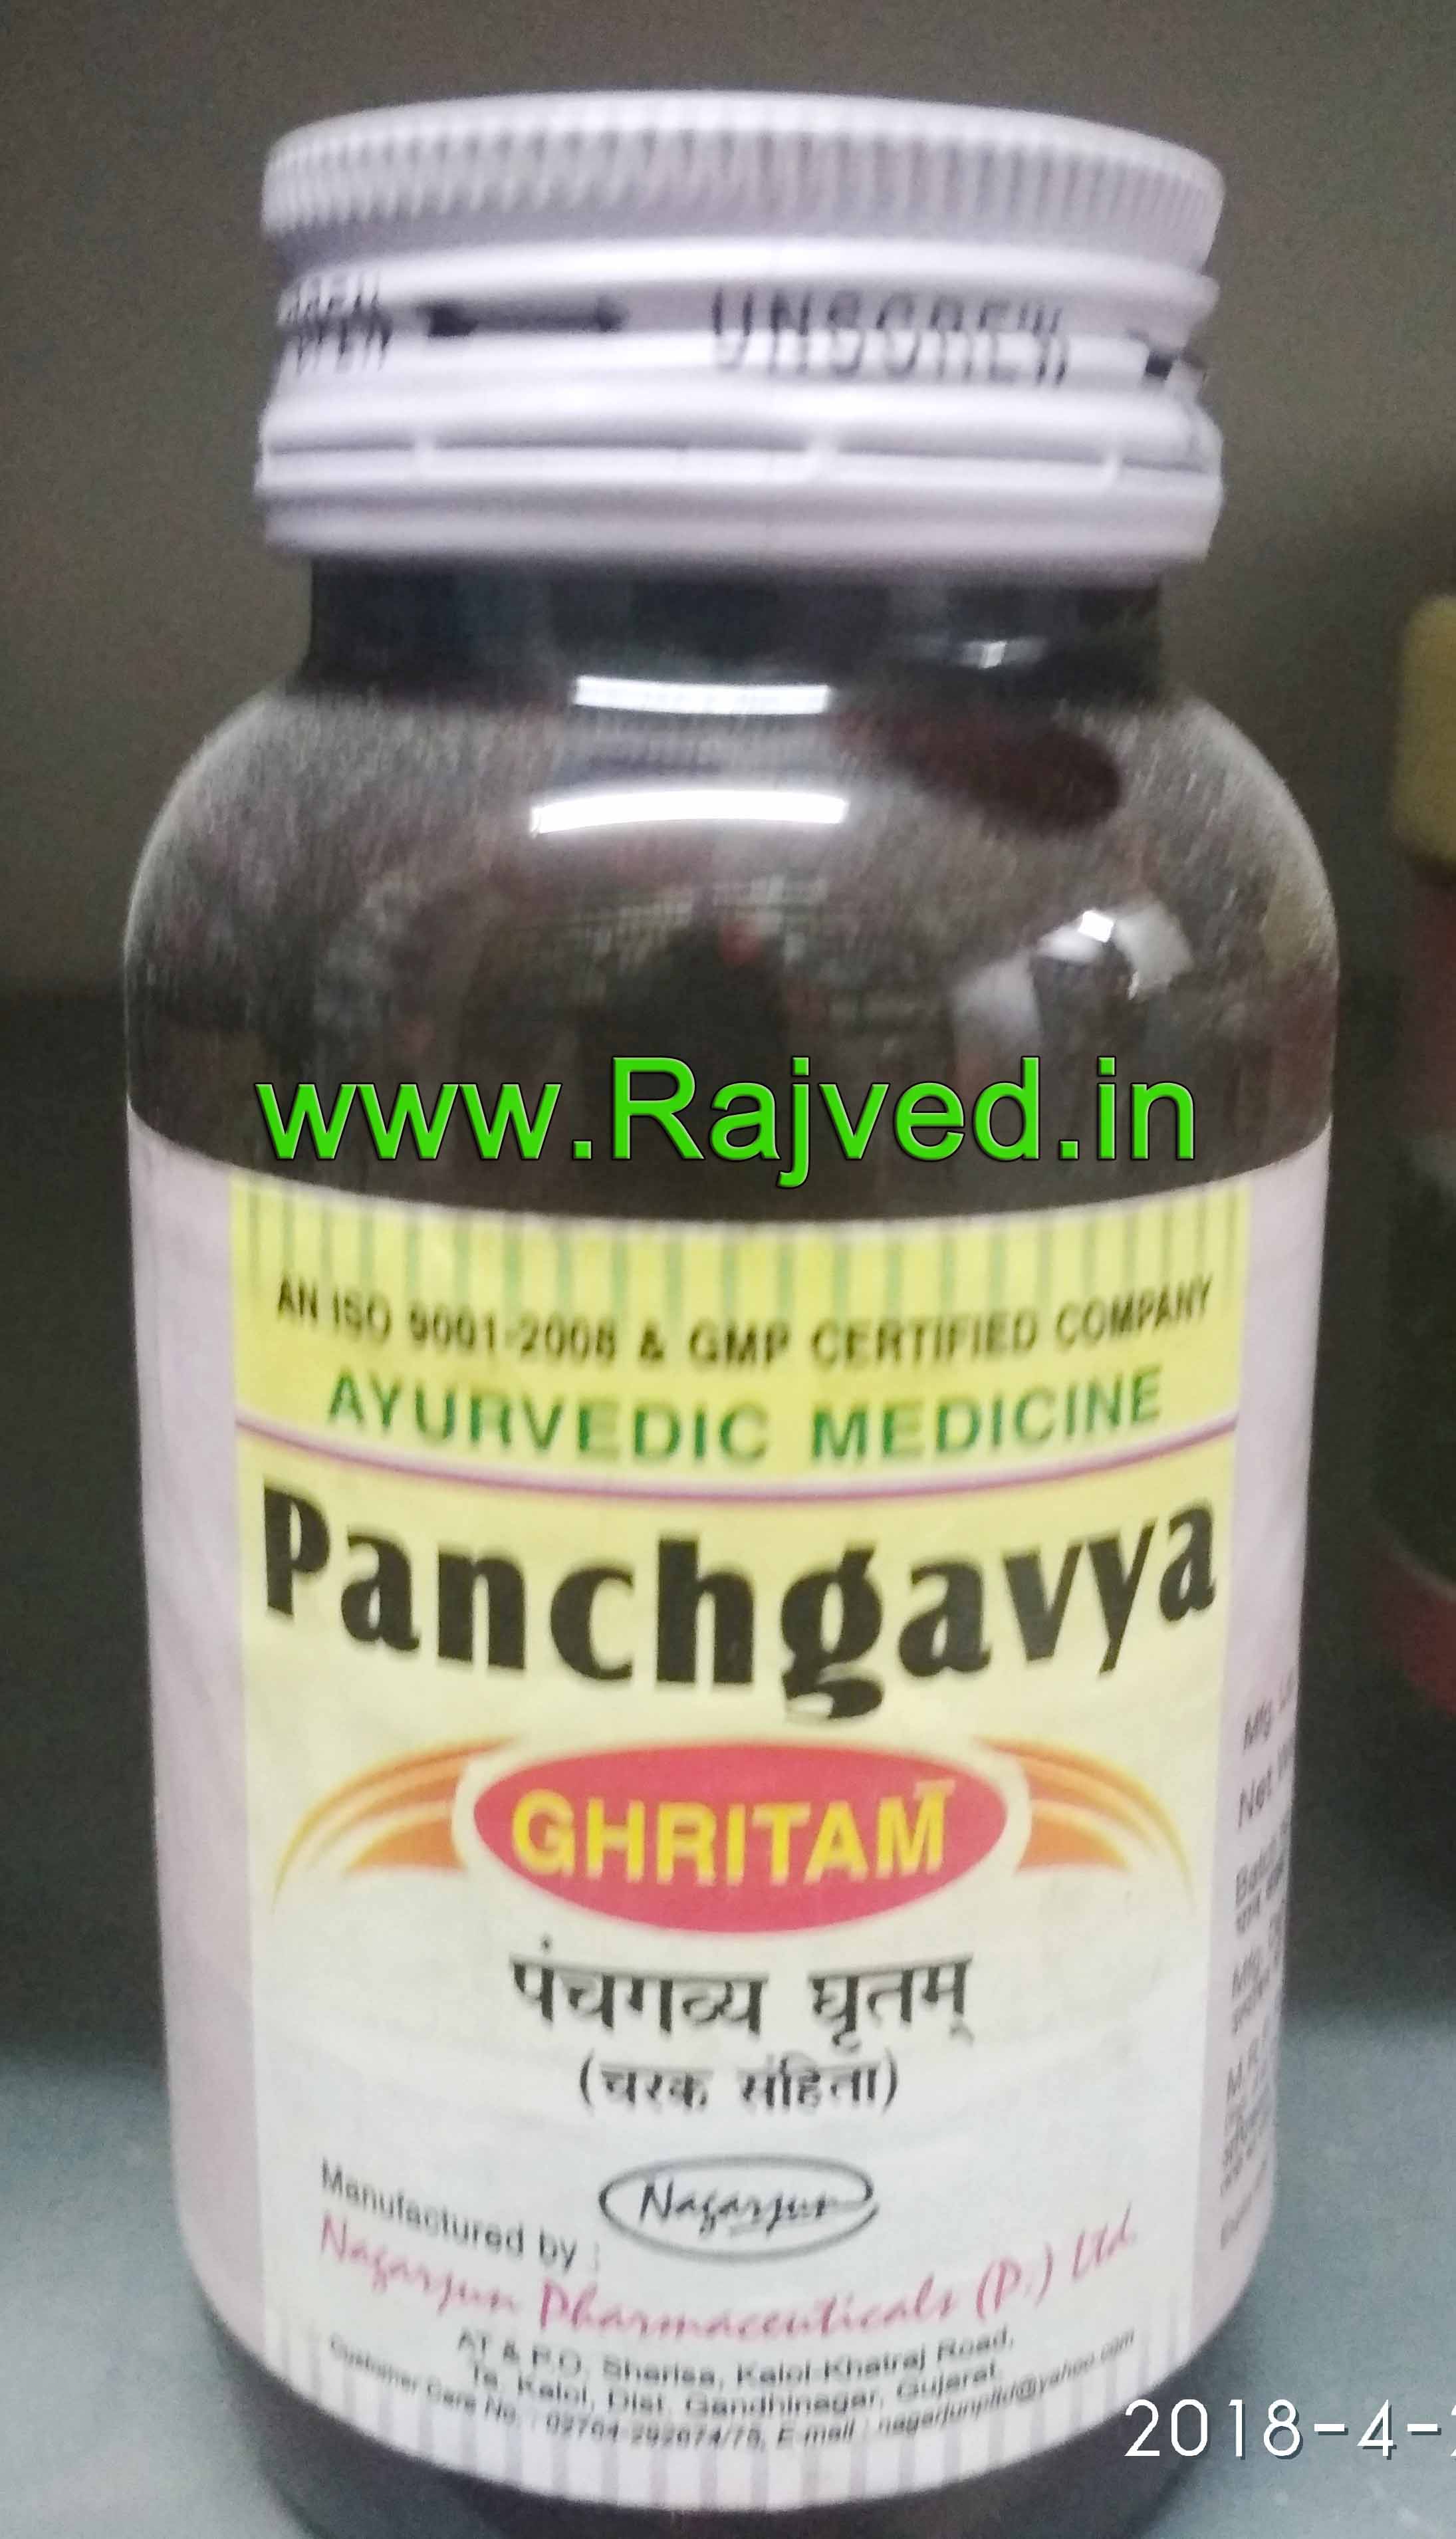 panchgavya ghritam 1000 gm upto 20% off nagarjun pharma gujarat